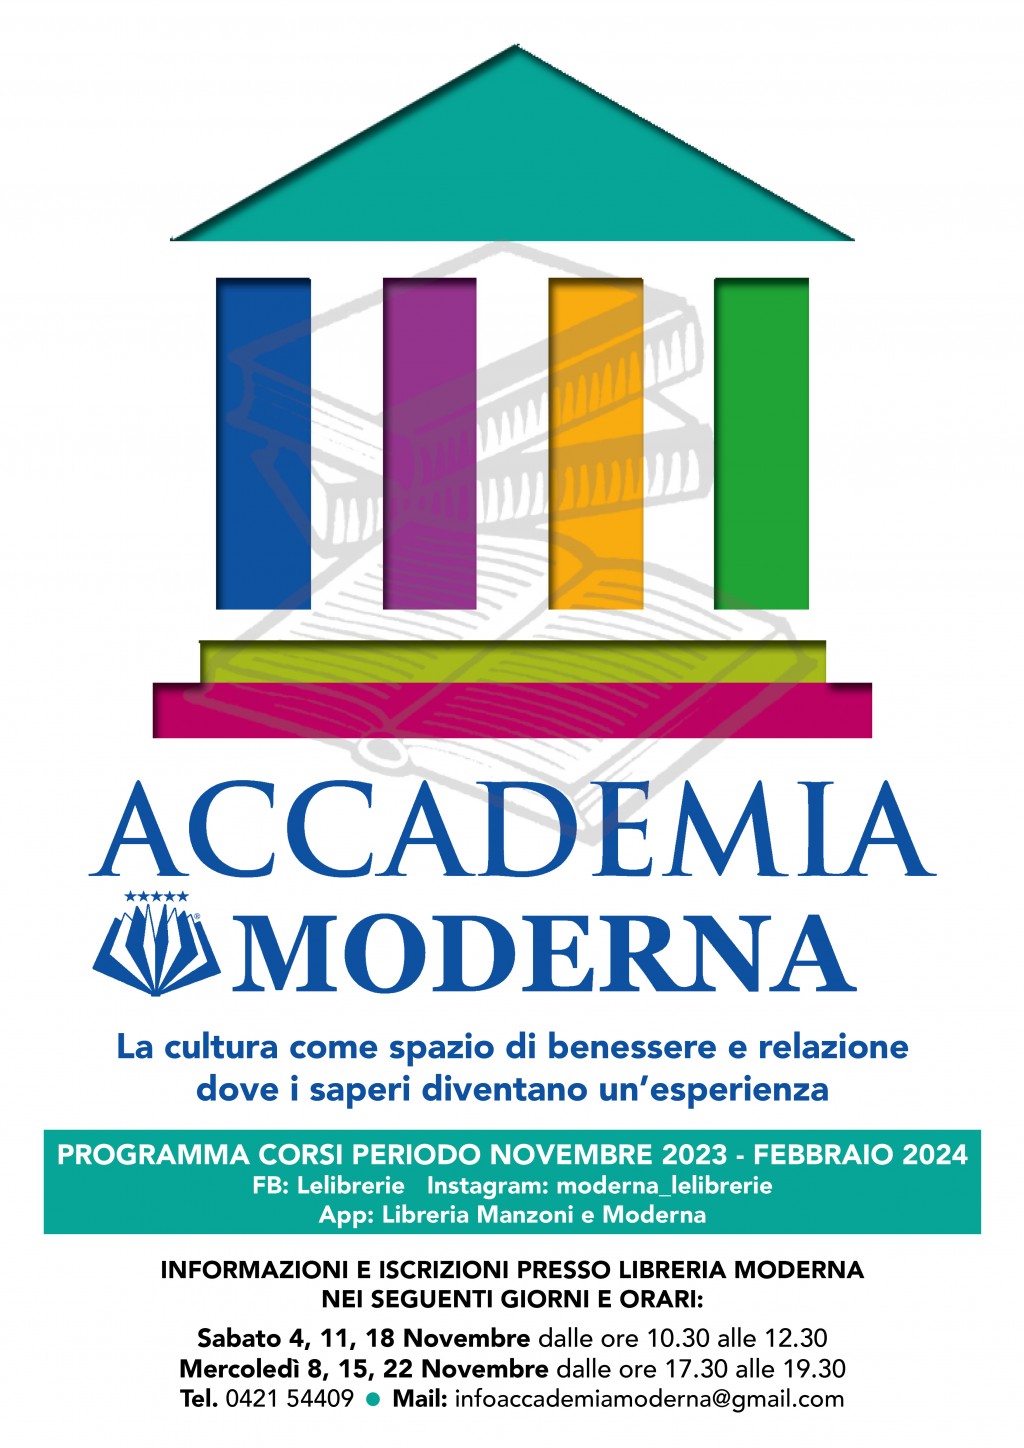 Accademia Moderna